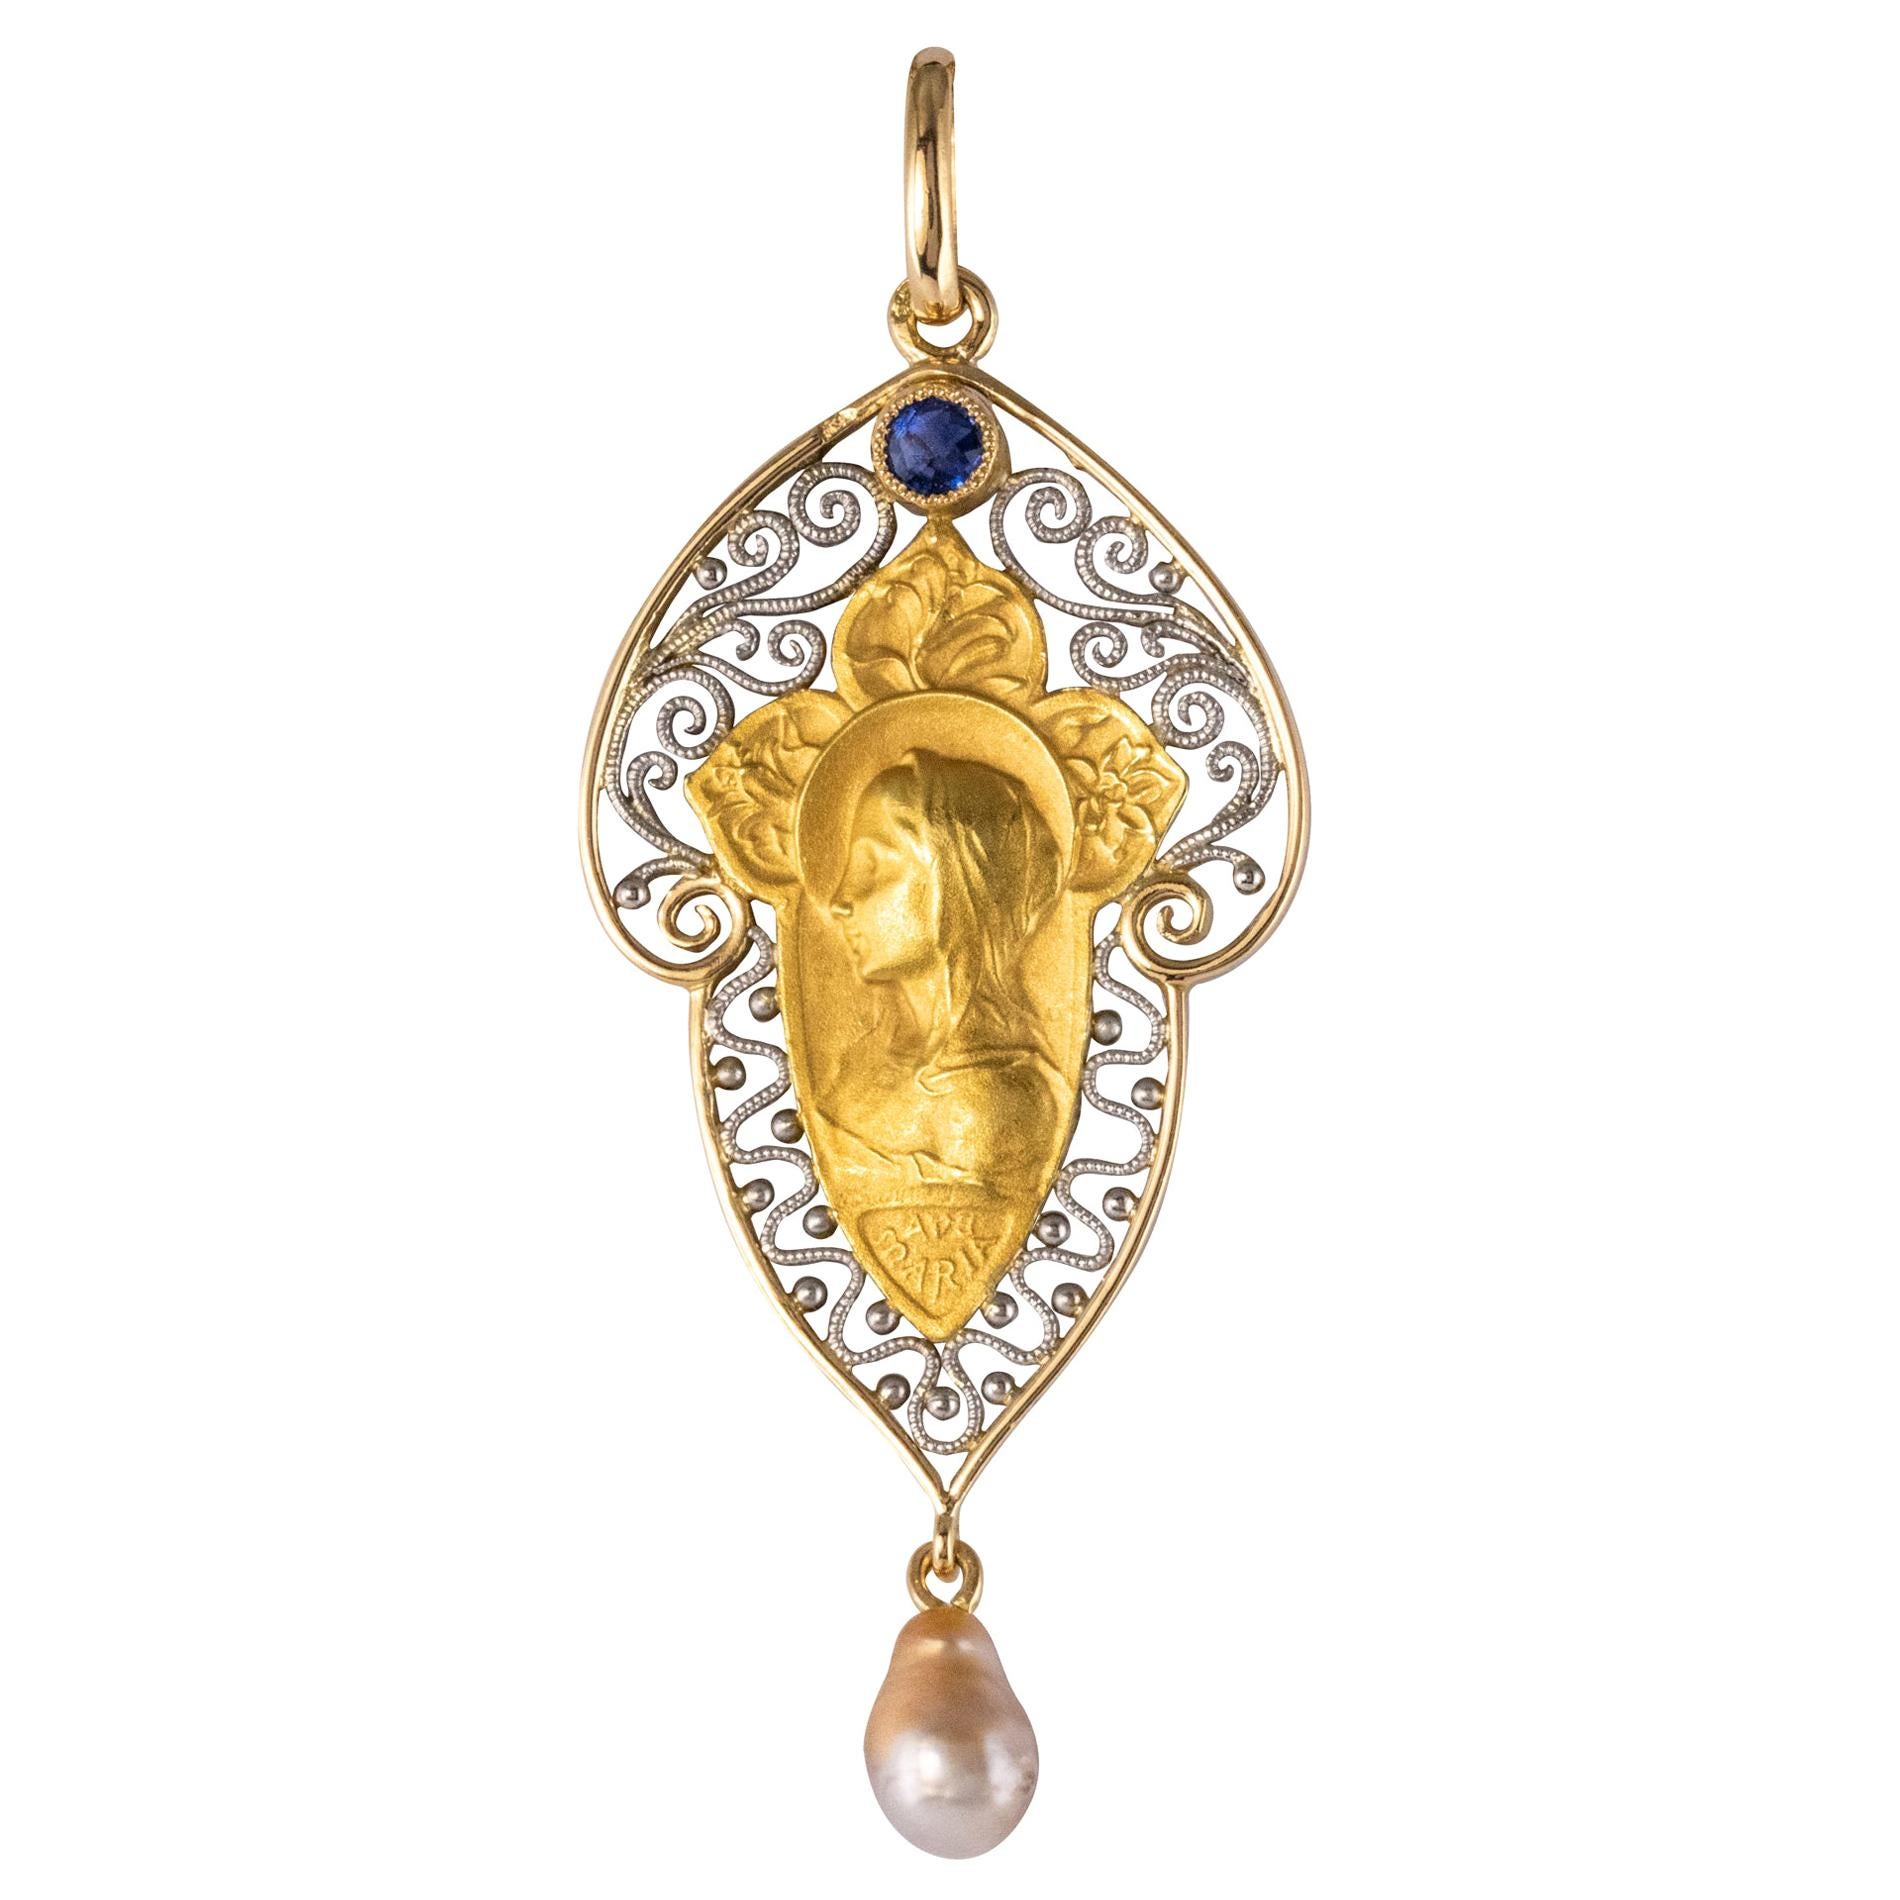 Pendentif Vierge en or jaune et blanc 18 carats, saphir et perle naturelle, datant des années 1900.